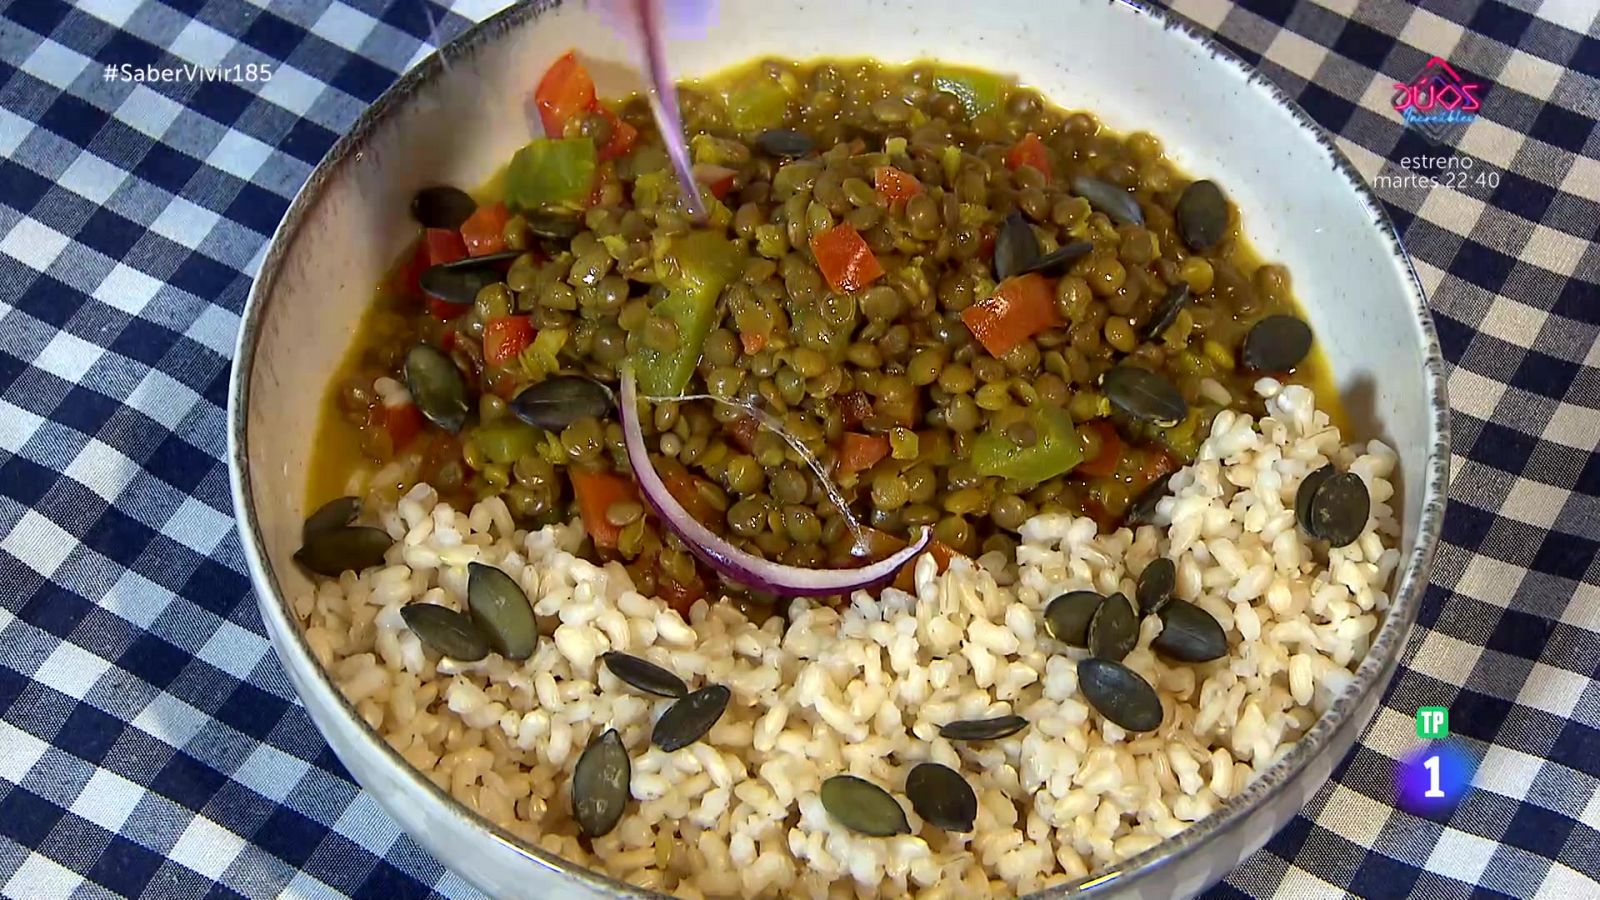 Deliciosa y nutritiva receta de lentejas al curry de la chef y nutricionista Marta Verona